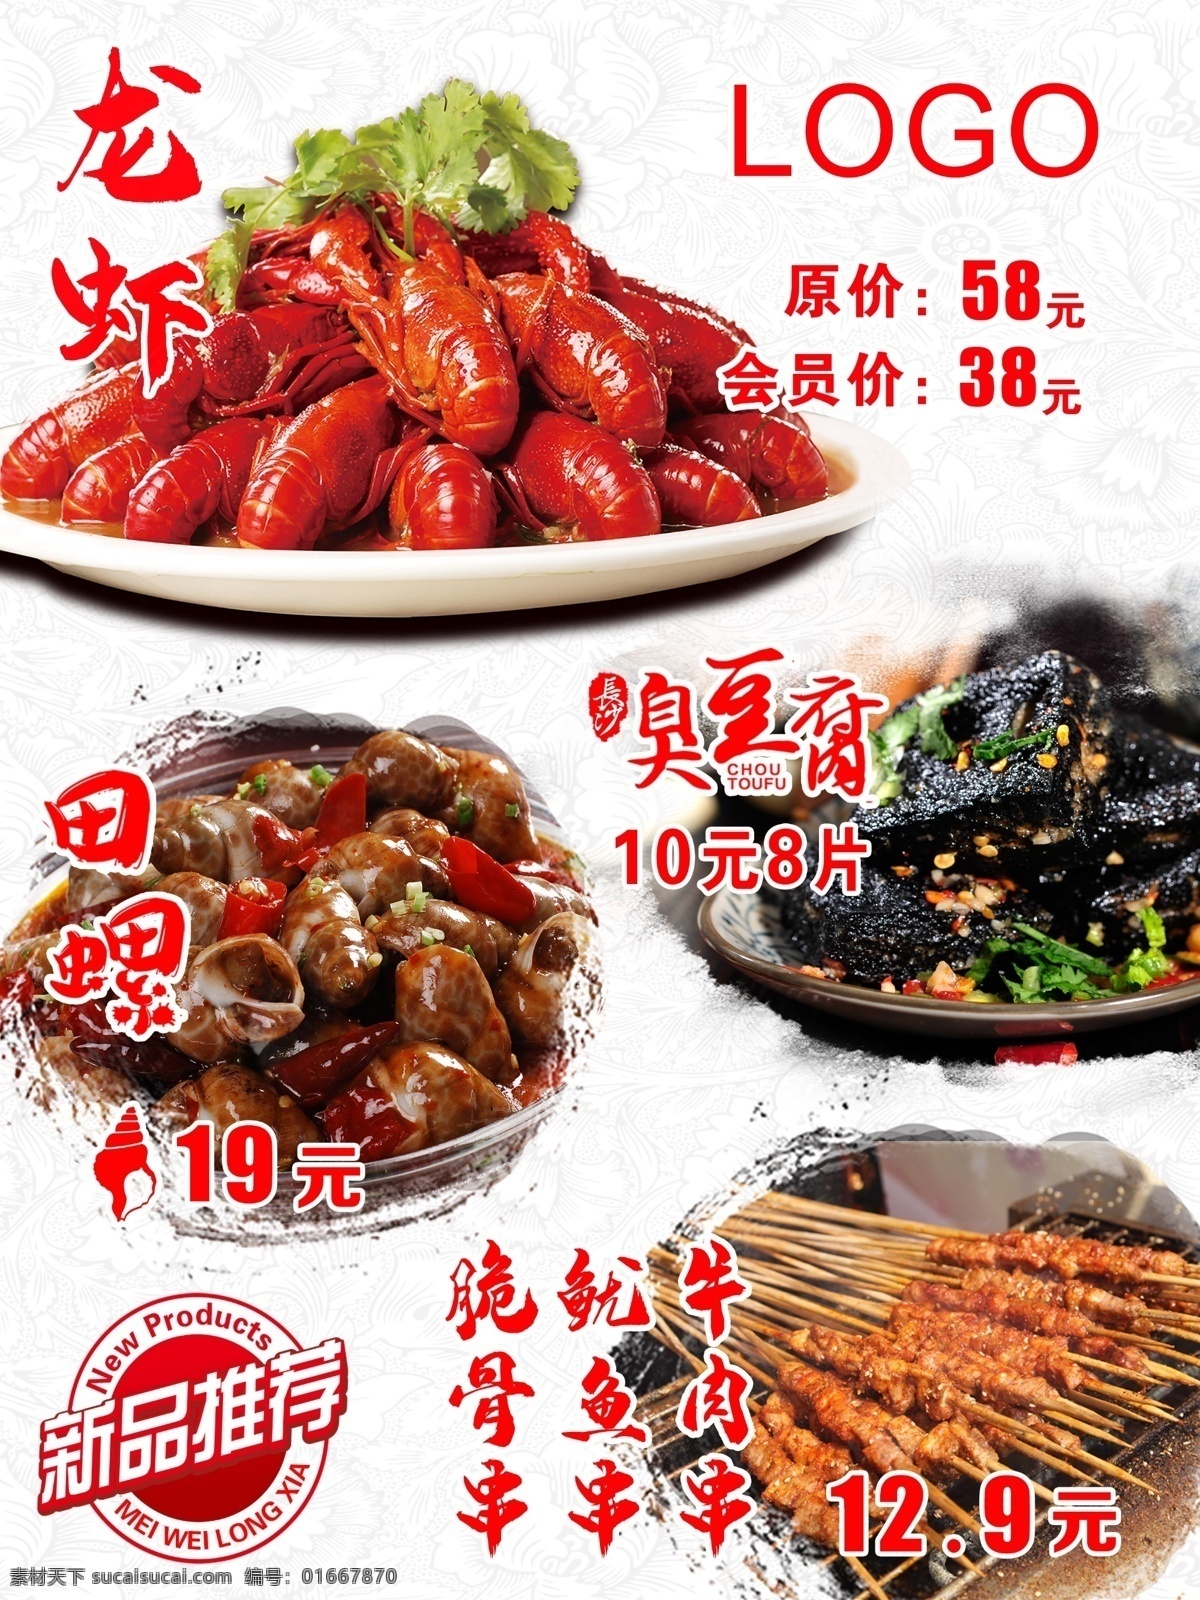 小吃新品推荐 小吃 龙虾 臭豆腐 田螺 烤串 中国风